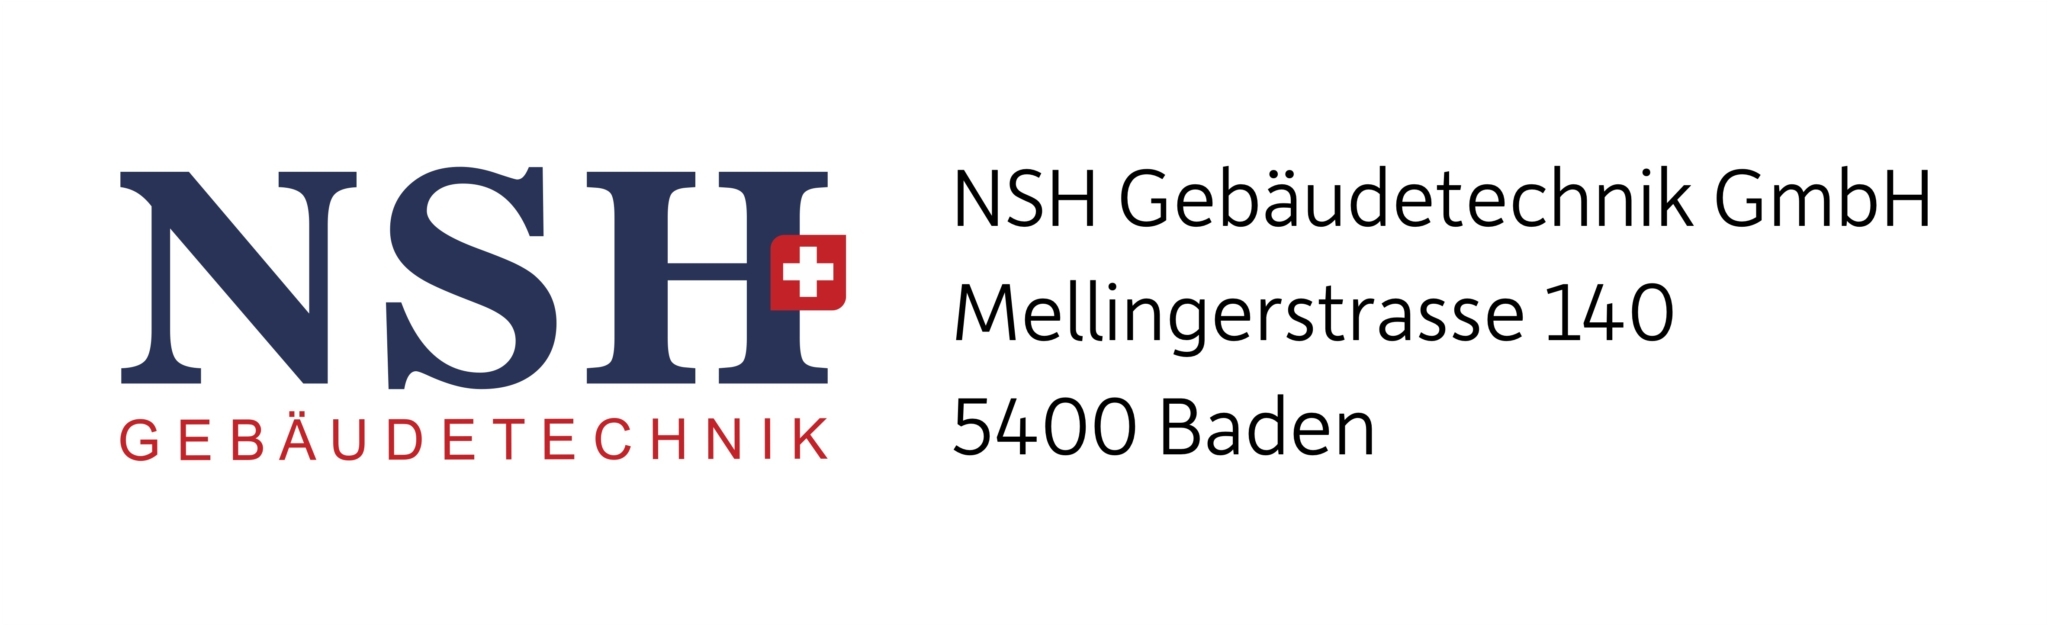 NSH Gebäudetechnik GmbH